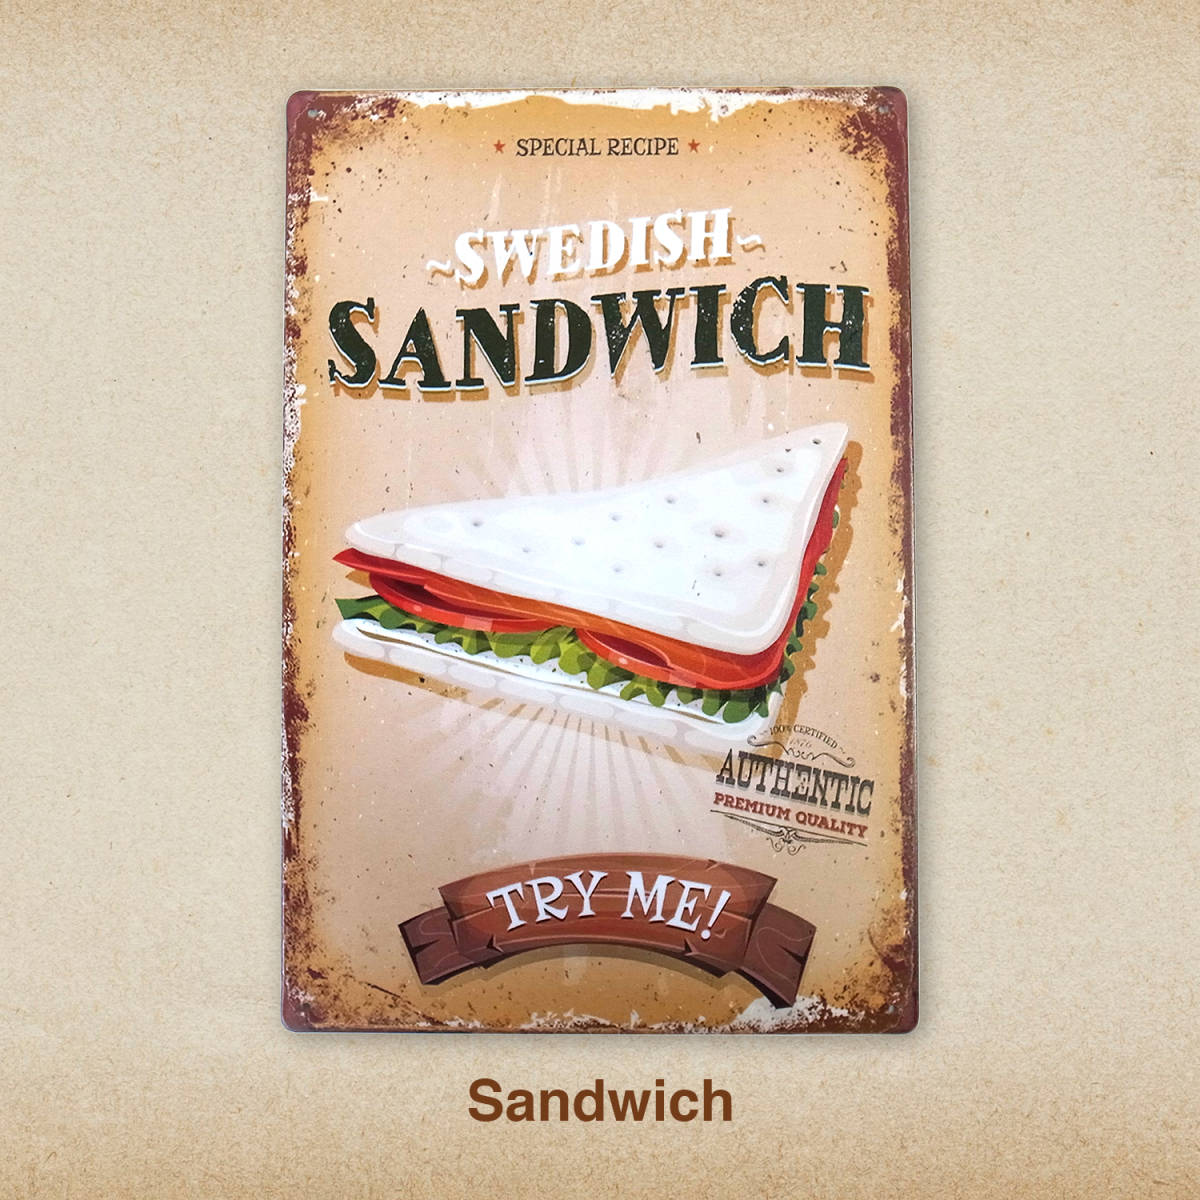  нездоровая еда жестяная пластина табличка 20cm×30cm сэндвич еда быстрый капот american смешанные товары автограф панель балка ресторан 